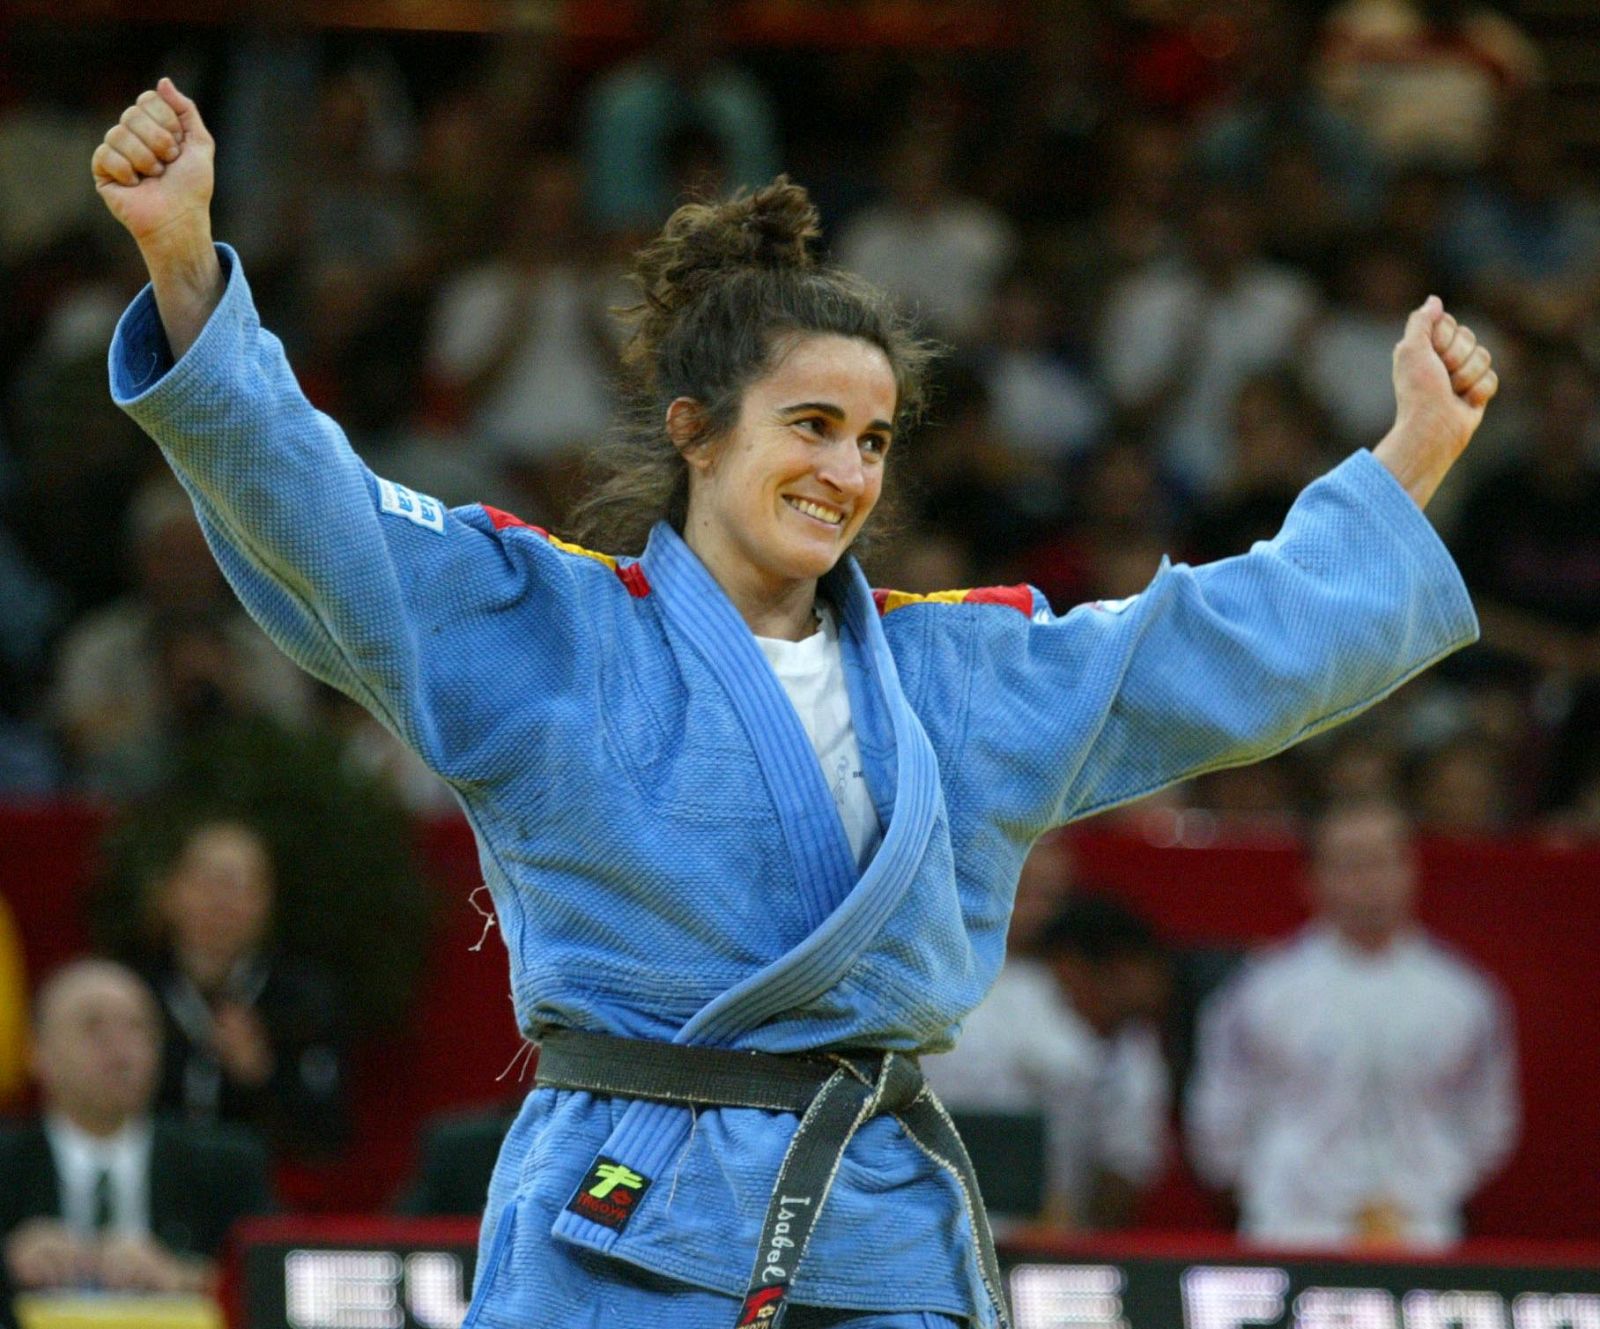 La medallista española Isabel Fernández durante un torneo de Judo de París.